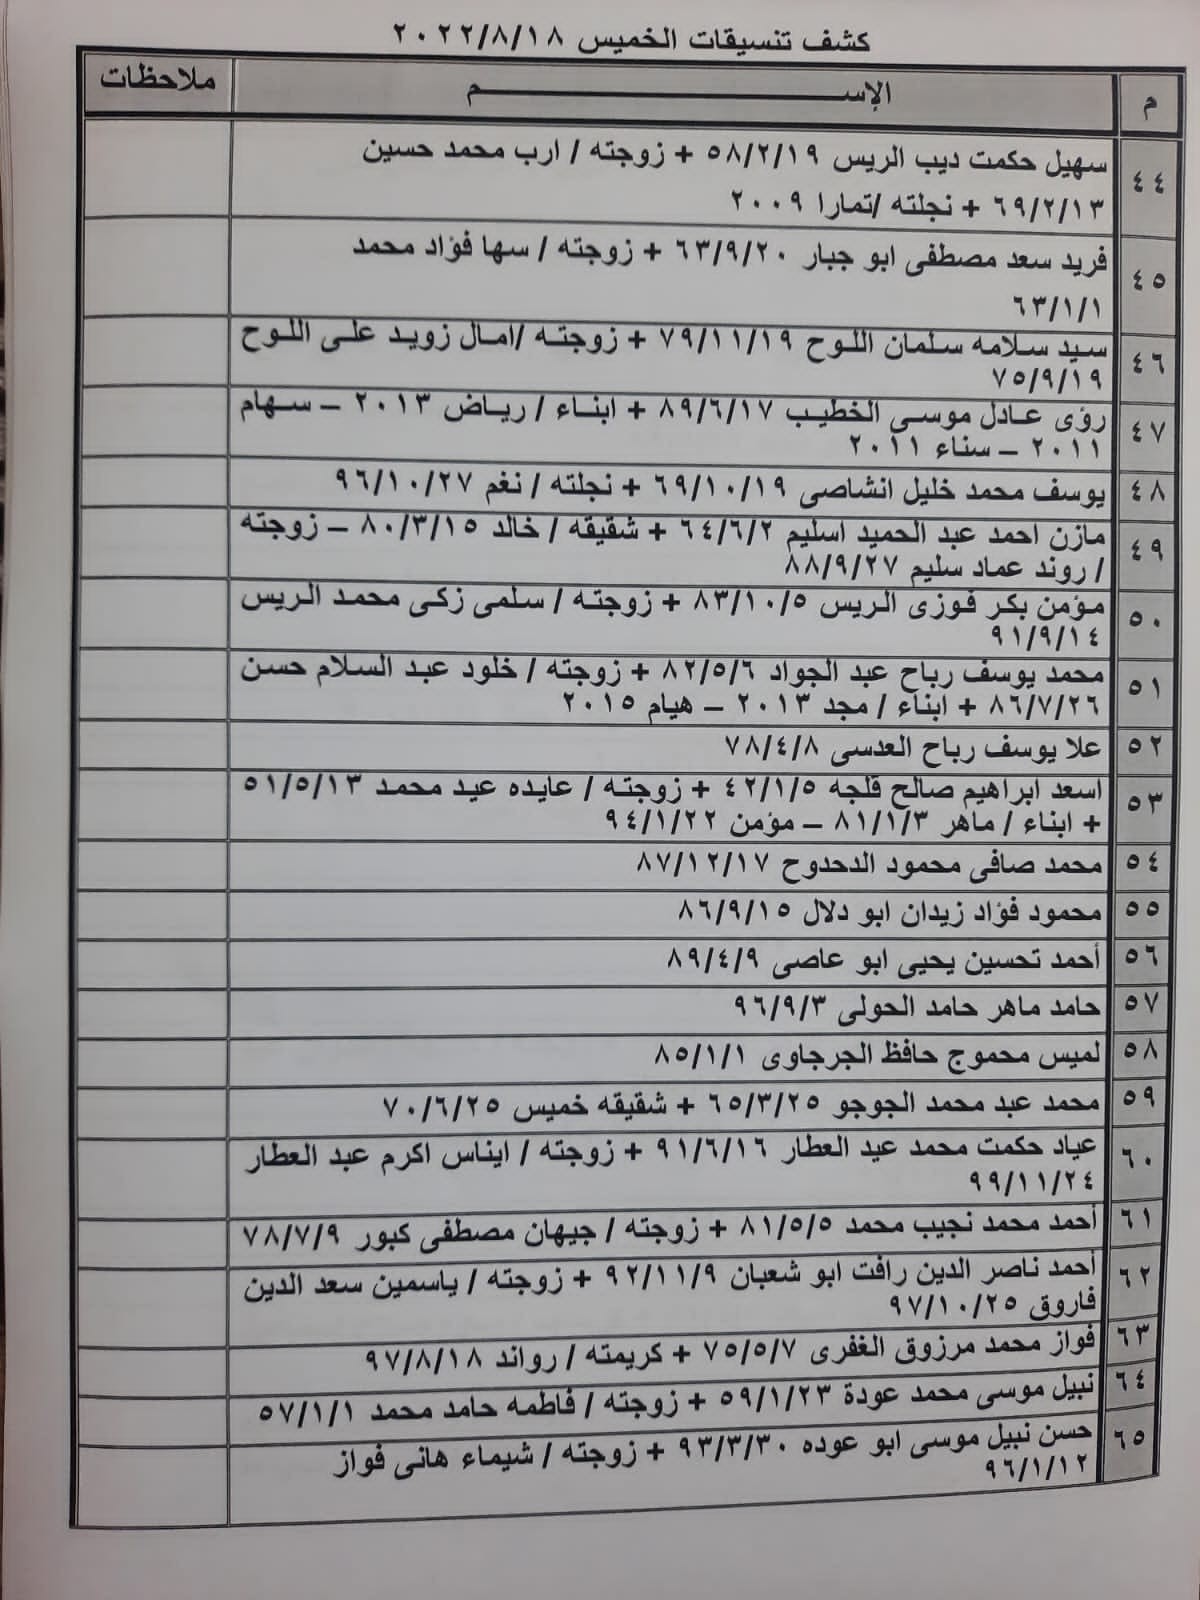 بالأسماء: كشف "تنسيقات مصرية" للسفر عبر معبر رفح الخميس 18 أغسطس 2022